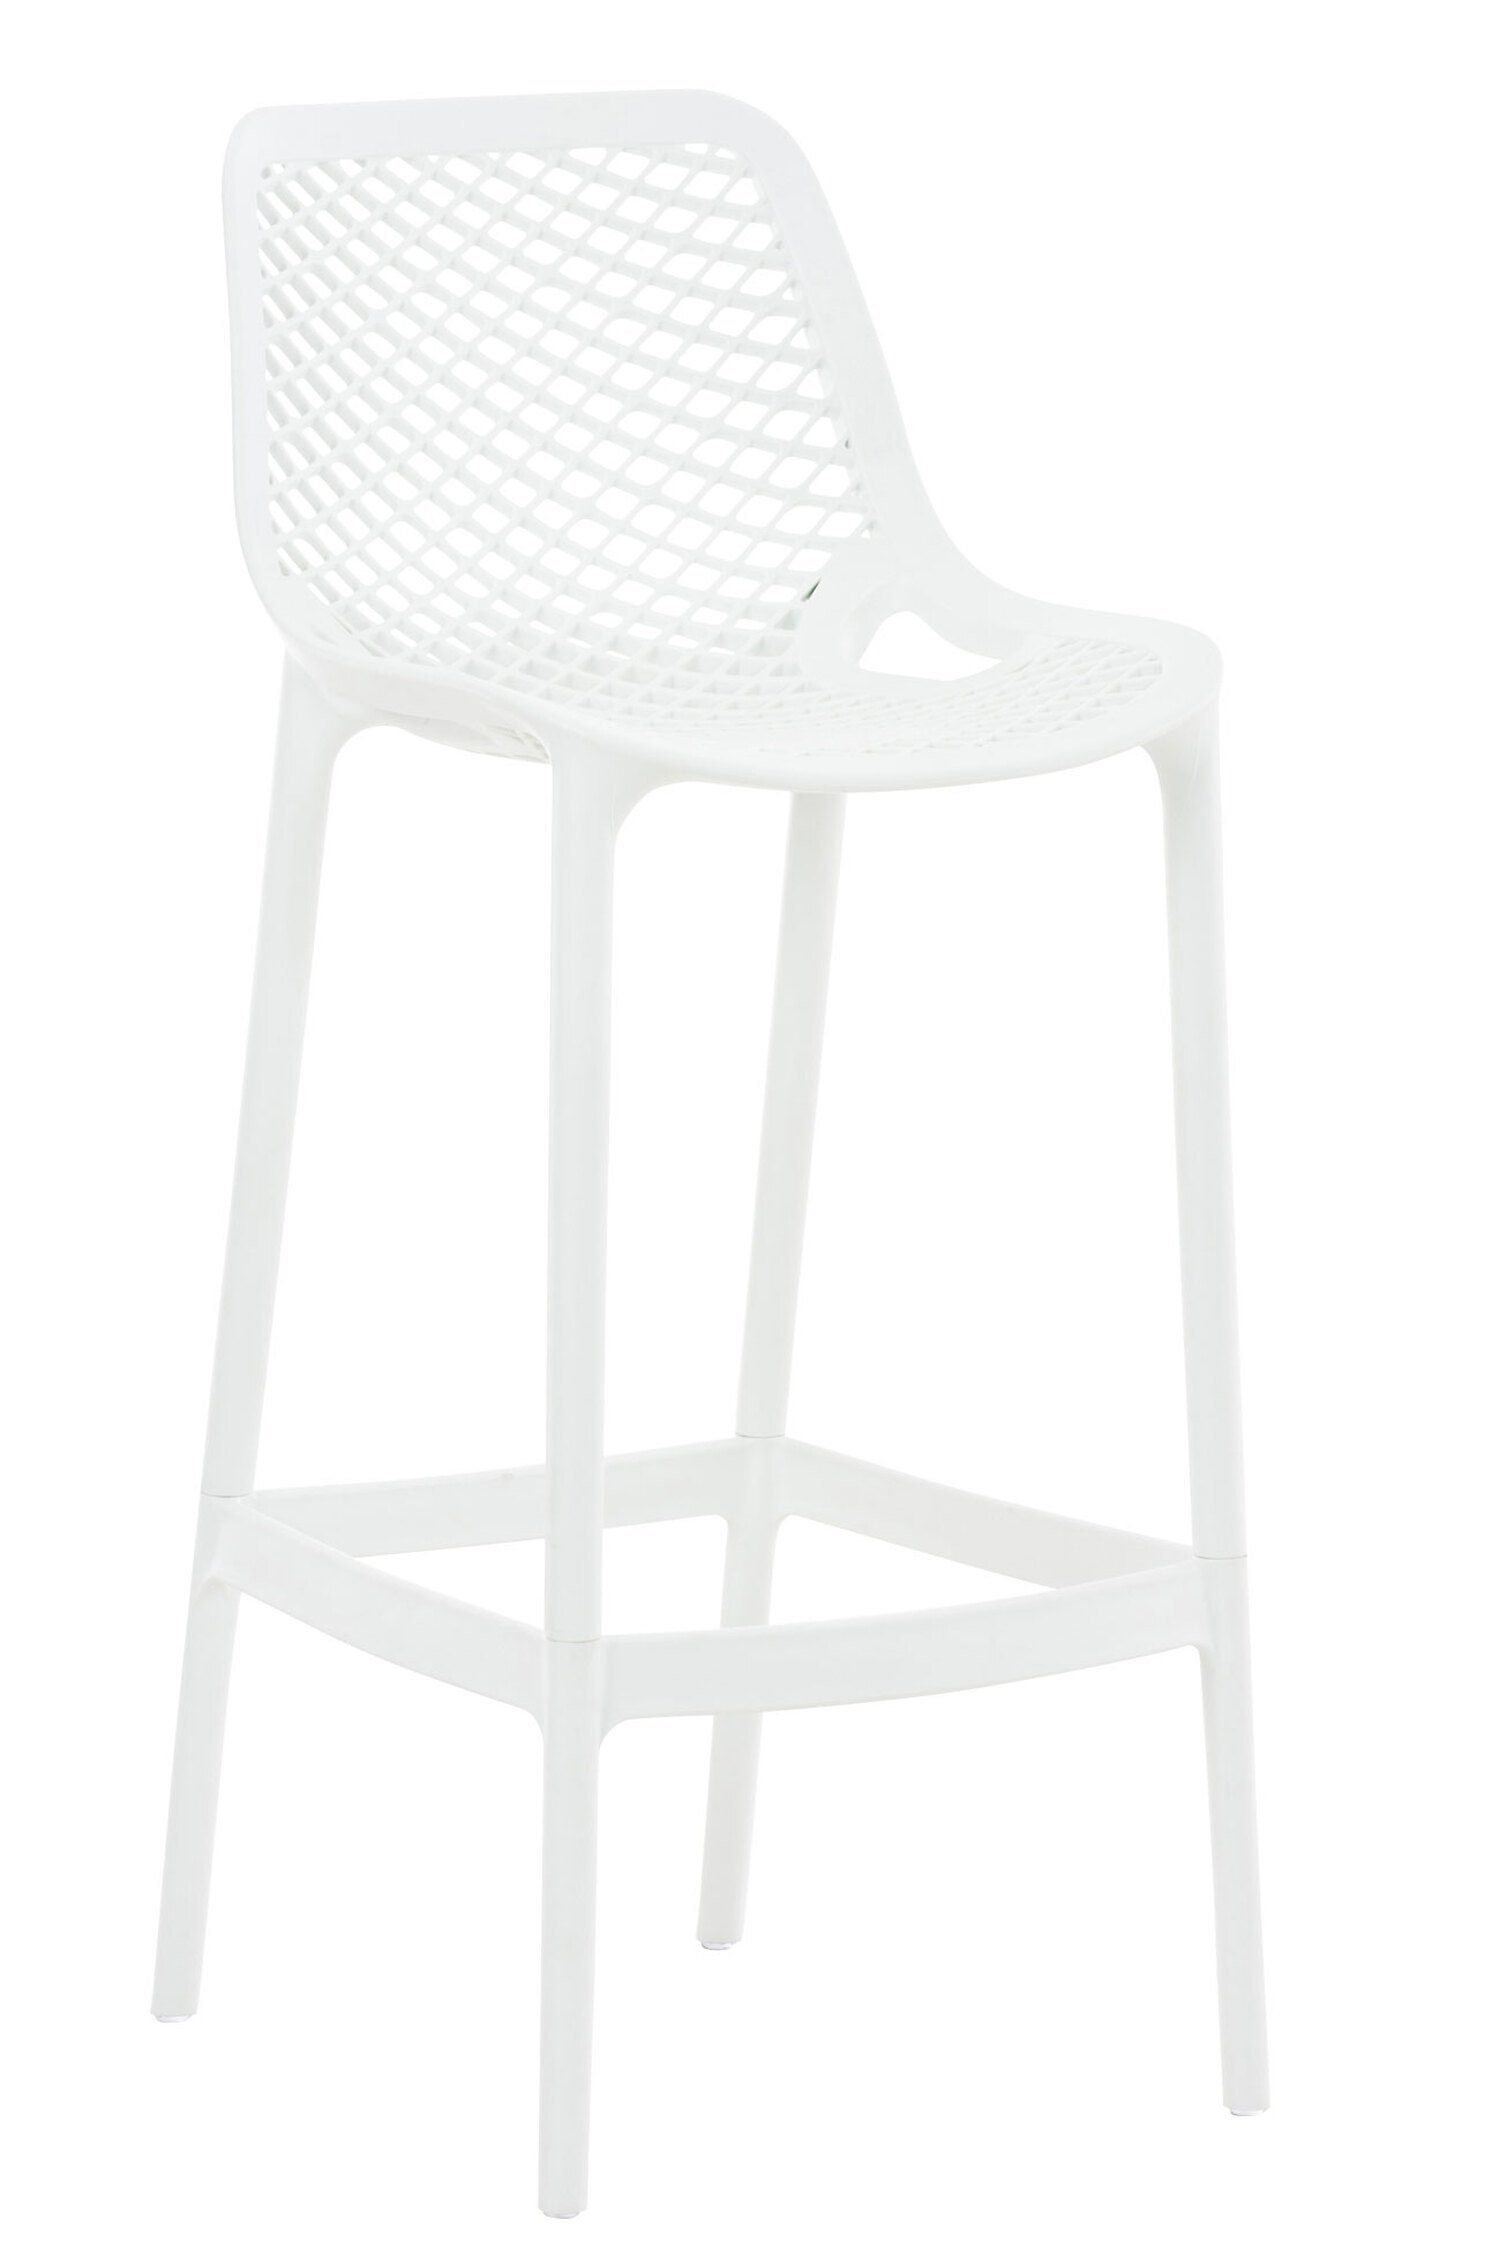 TPFLiving Barhocker Air (mit angenehmer Fußstütze - Hocker für Theke & Küche), Gestell Kunststoff - Sitzfläche: Kunststoff Weiß